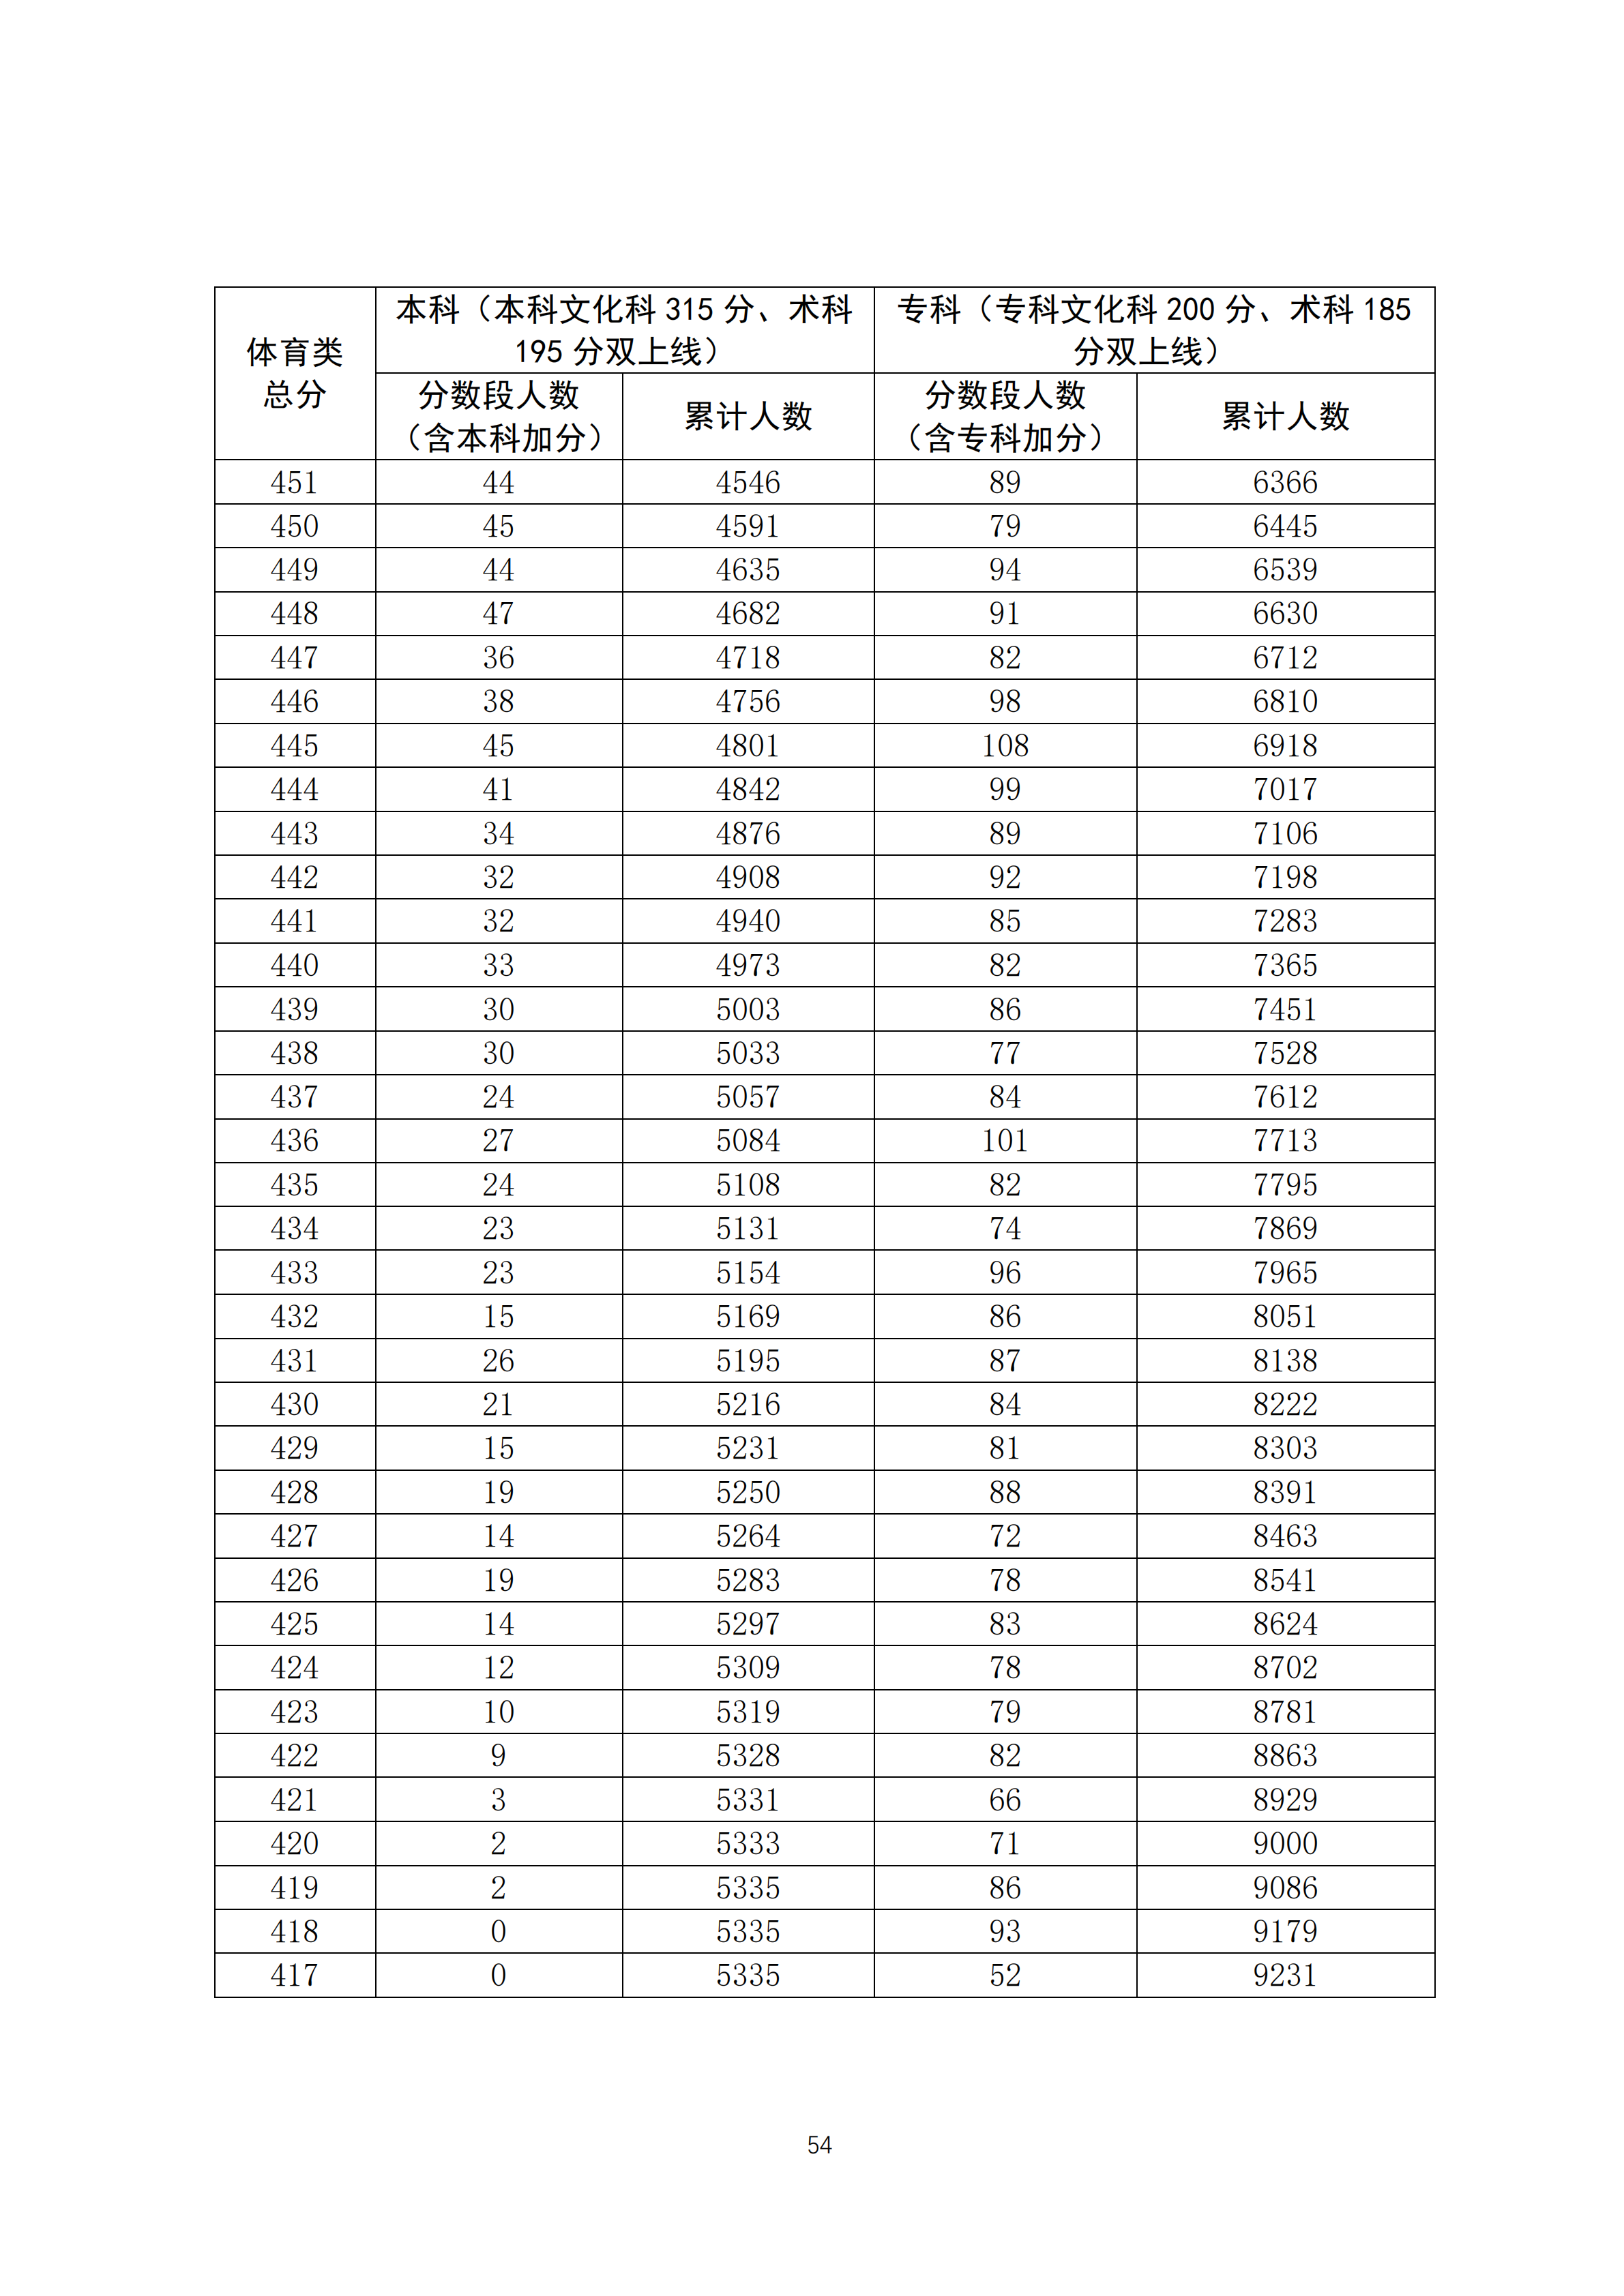 2020广东高考体育类成绩排名